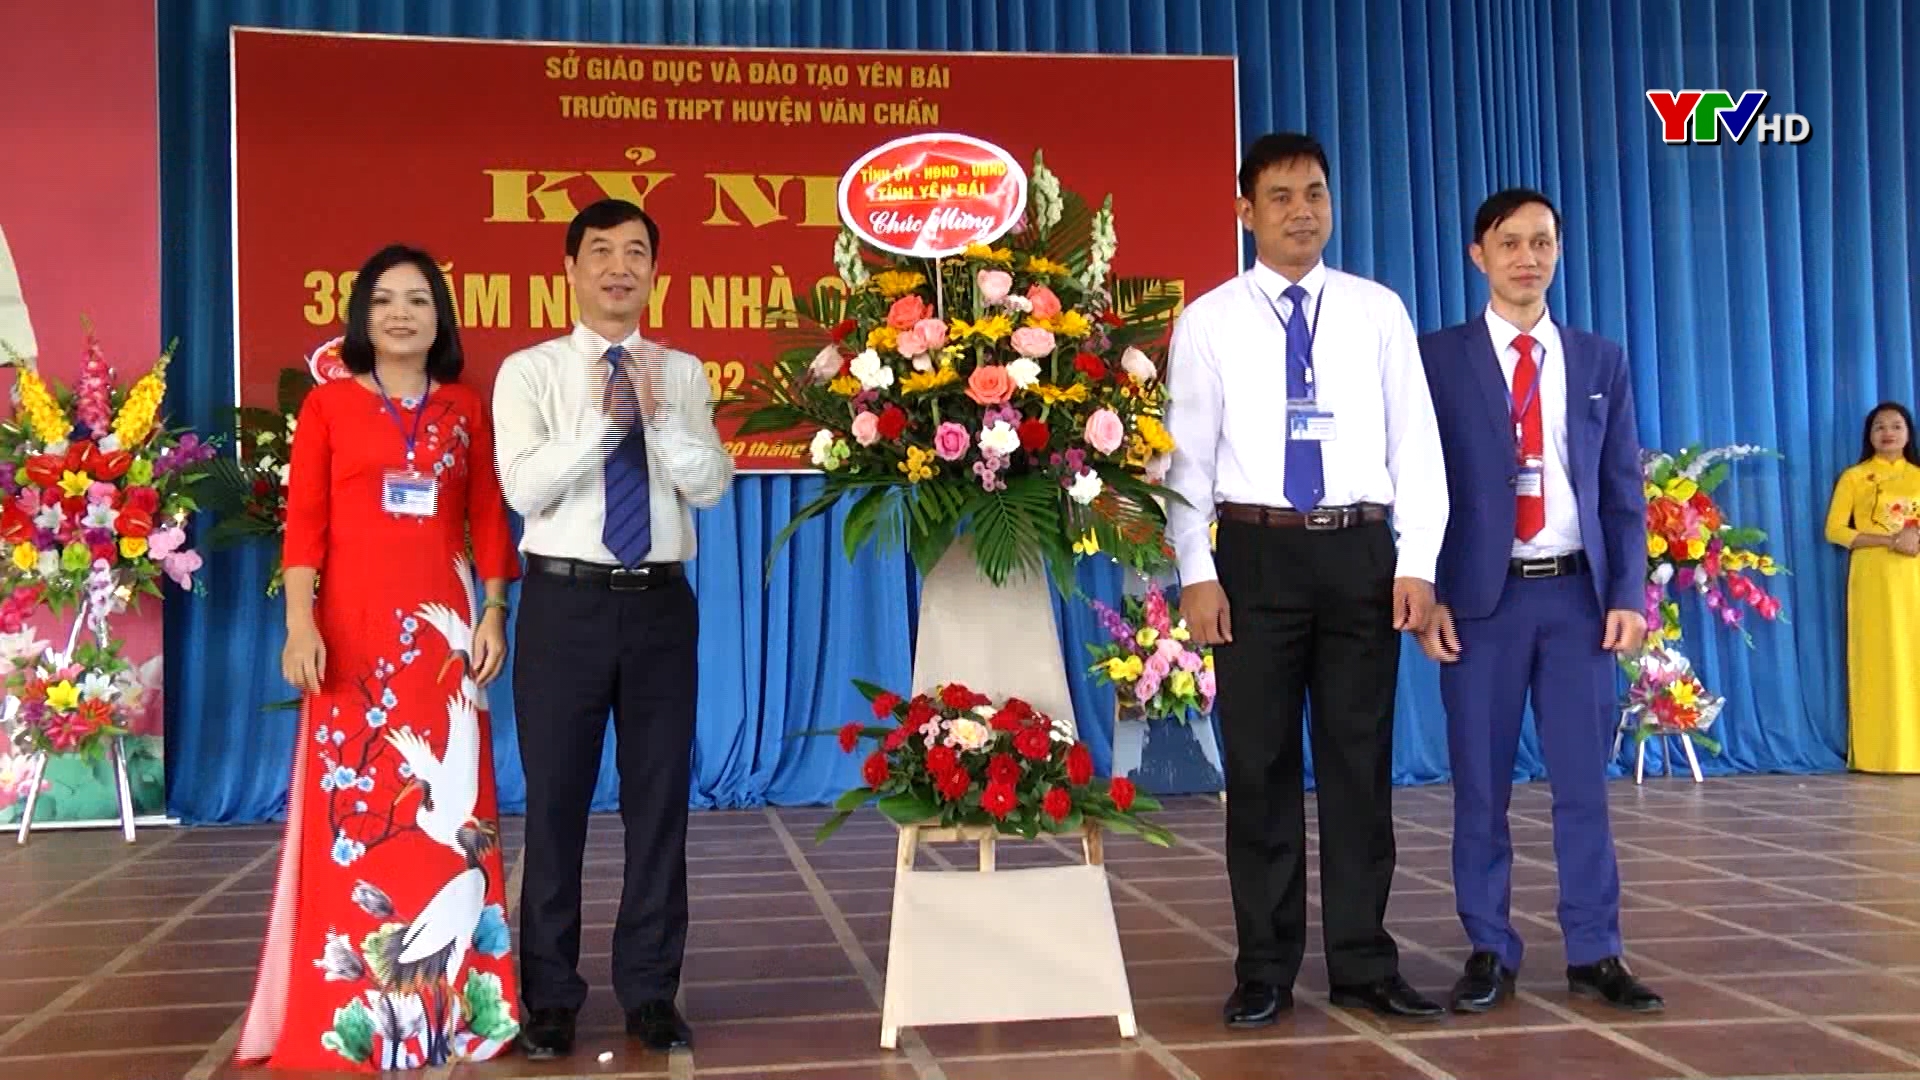 Đồng chí Nguyễn Minh Tuấn - Trưởng Ban Tuyên giáo Tỉnh ủy chúc mừng thầy và trò Trường THPT Văn Chấn